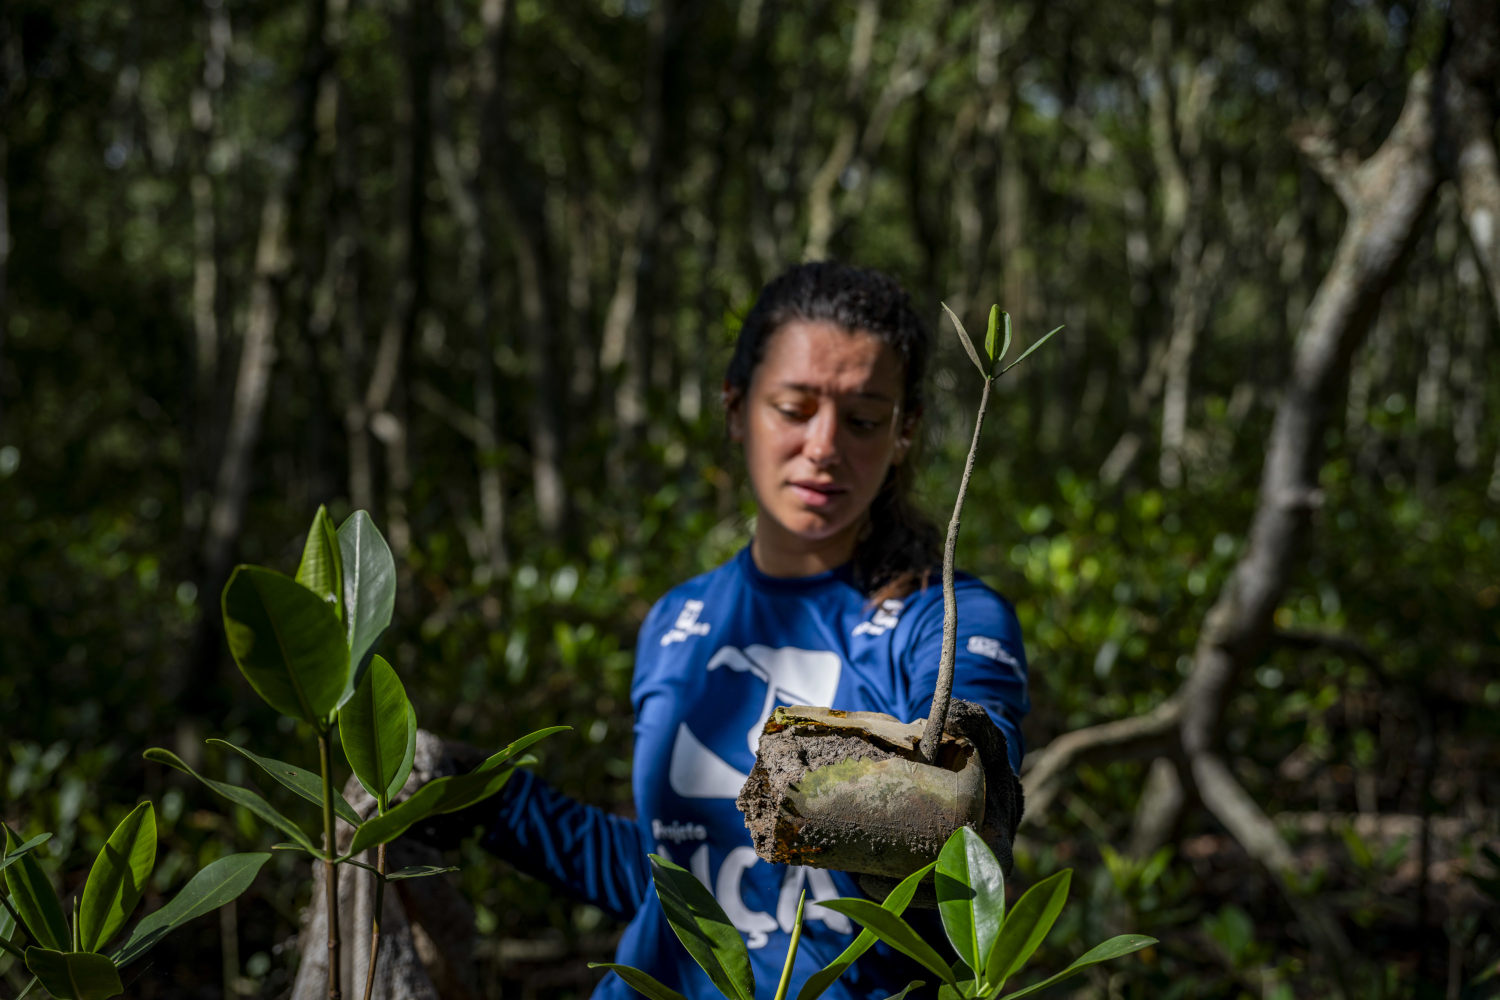 Baía de Guanabara resiliente: Projeto UÇÁ monitora fauna em área de manguezal restaurada da APA de Guapi-Mirim